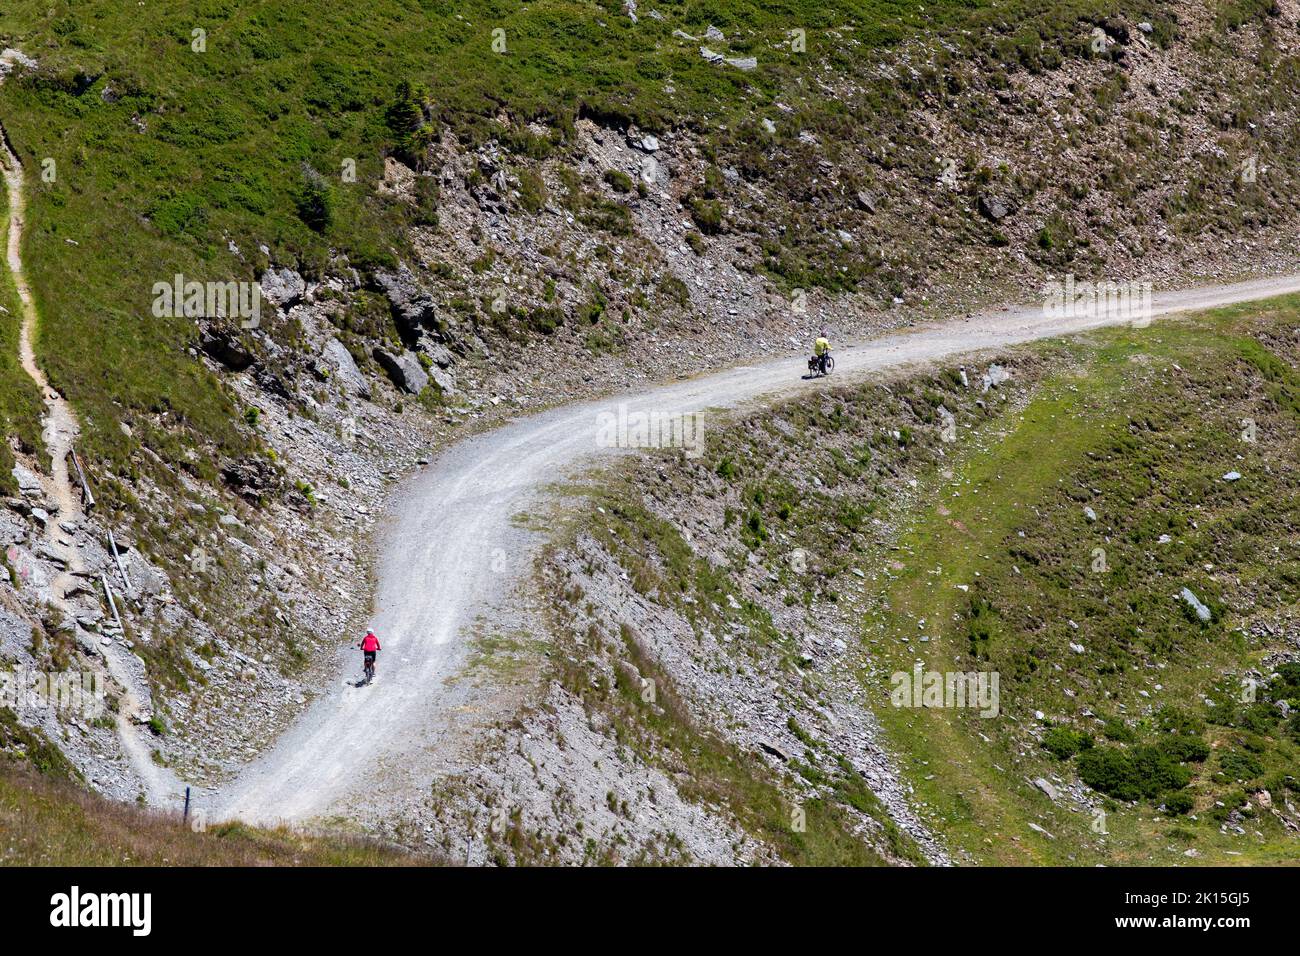 Luftbild von zwei Radfahrern, die auf dem Bergweg bergab fahren, Sport-Lifestyle im Freien Stockfoto